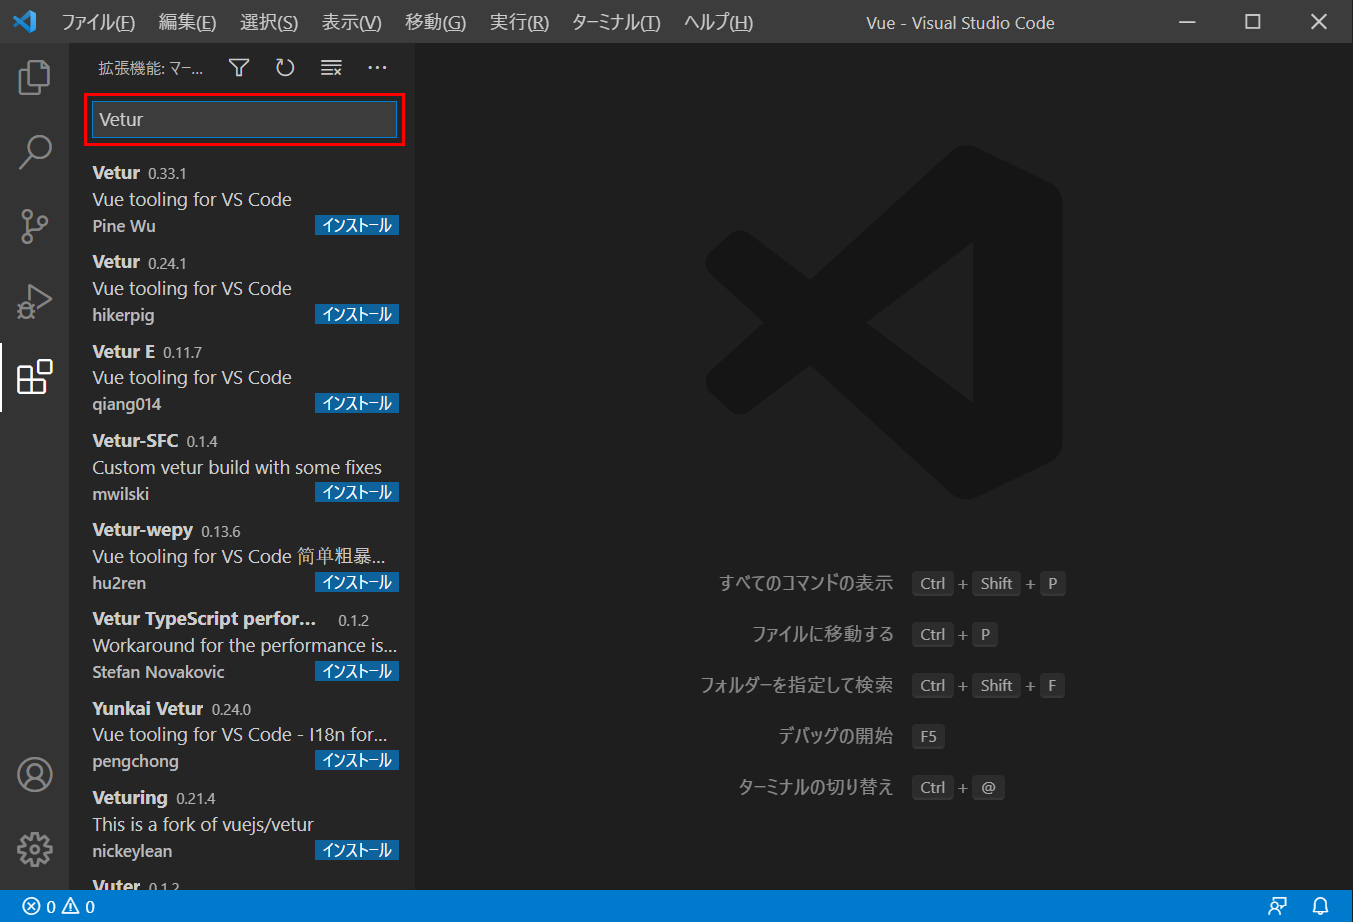 Visual Studio Codeの拡張機能を検索するテキストボックスにVeturを入力